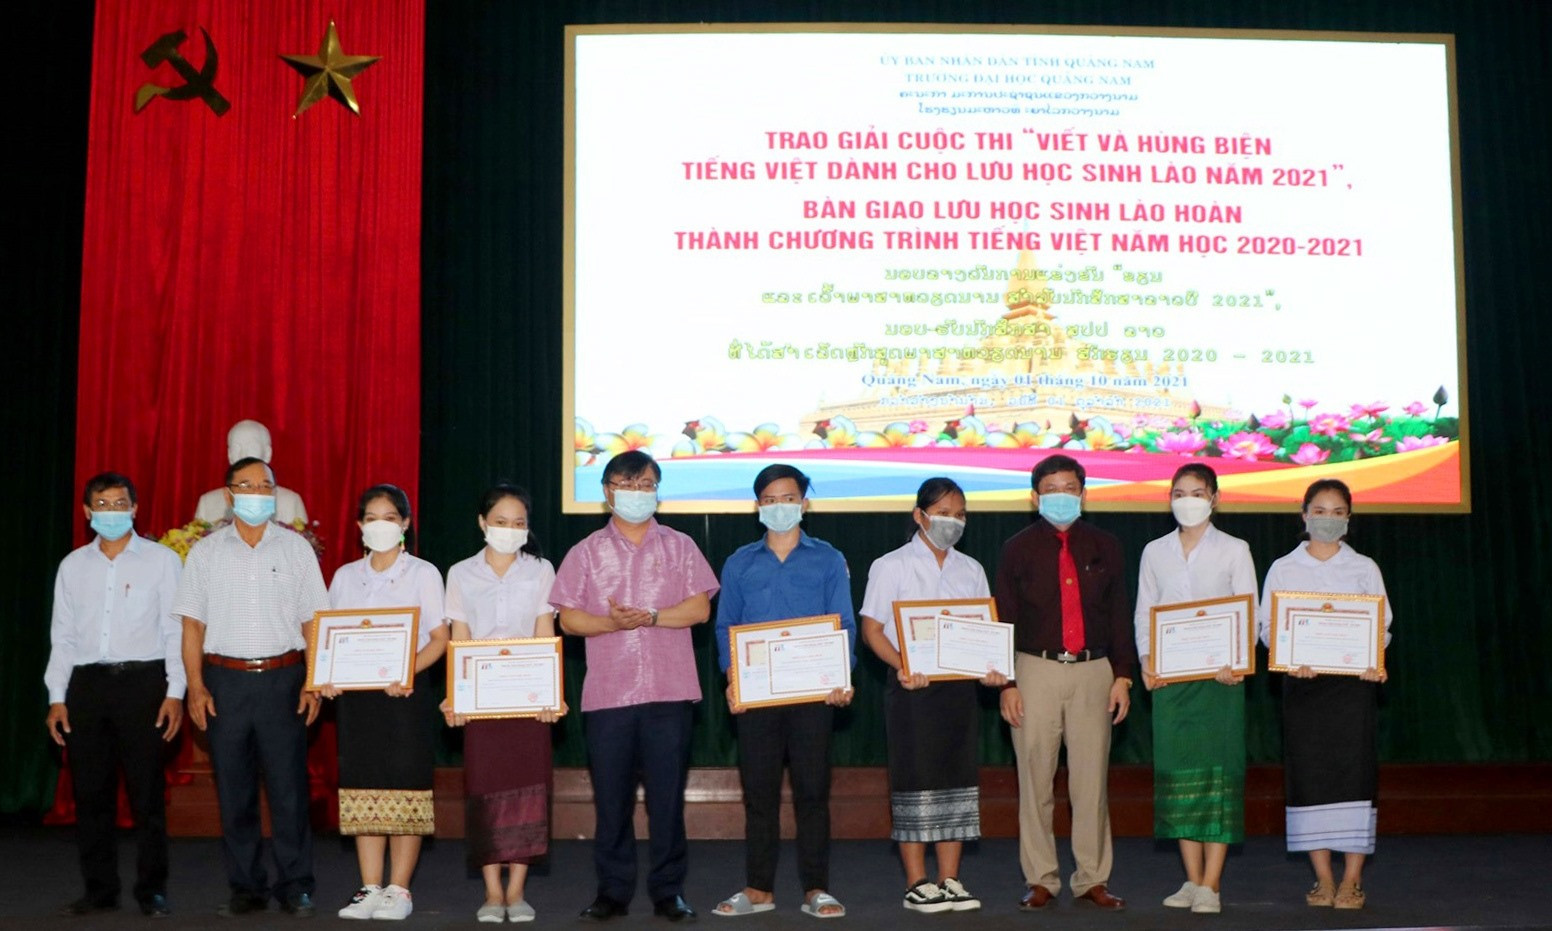 Trao thưởng cho các em đạt giải trong cuộc thi “Viết và hùng biện tiếng Việt dành cho lưu học sinh Lào”. Ảnh: CHÂU HÙNG